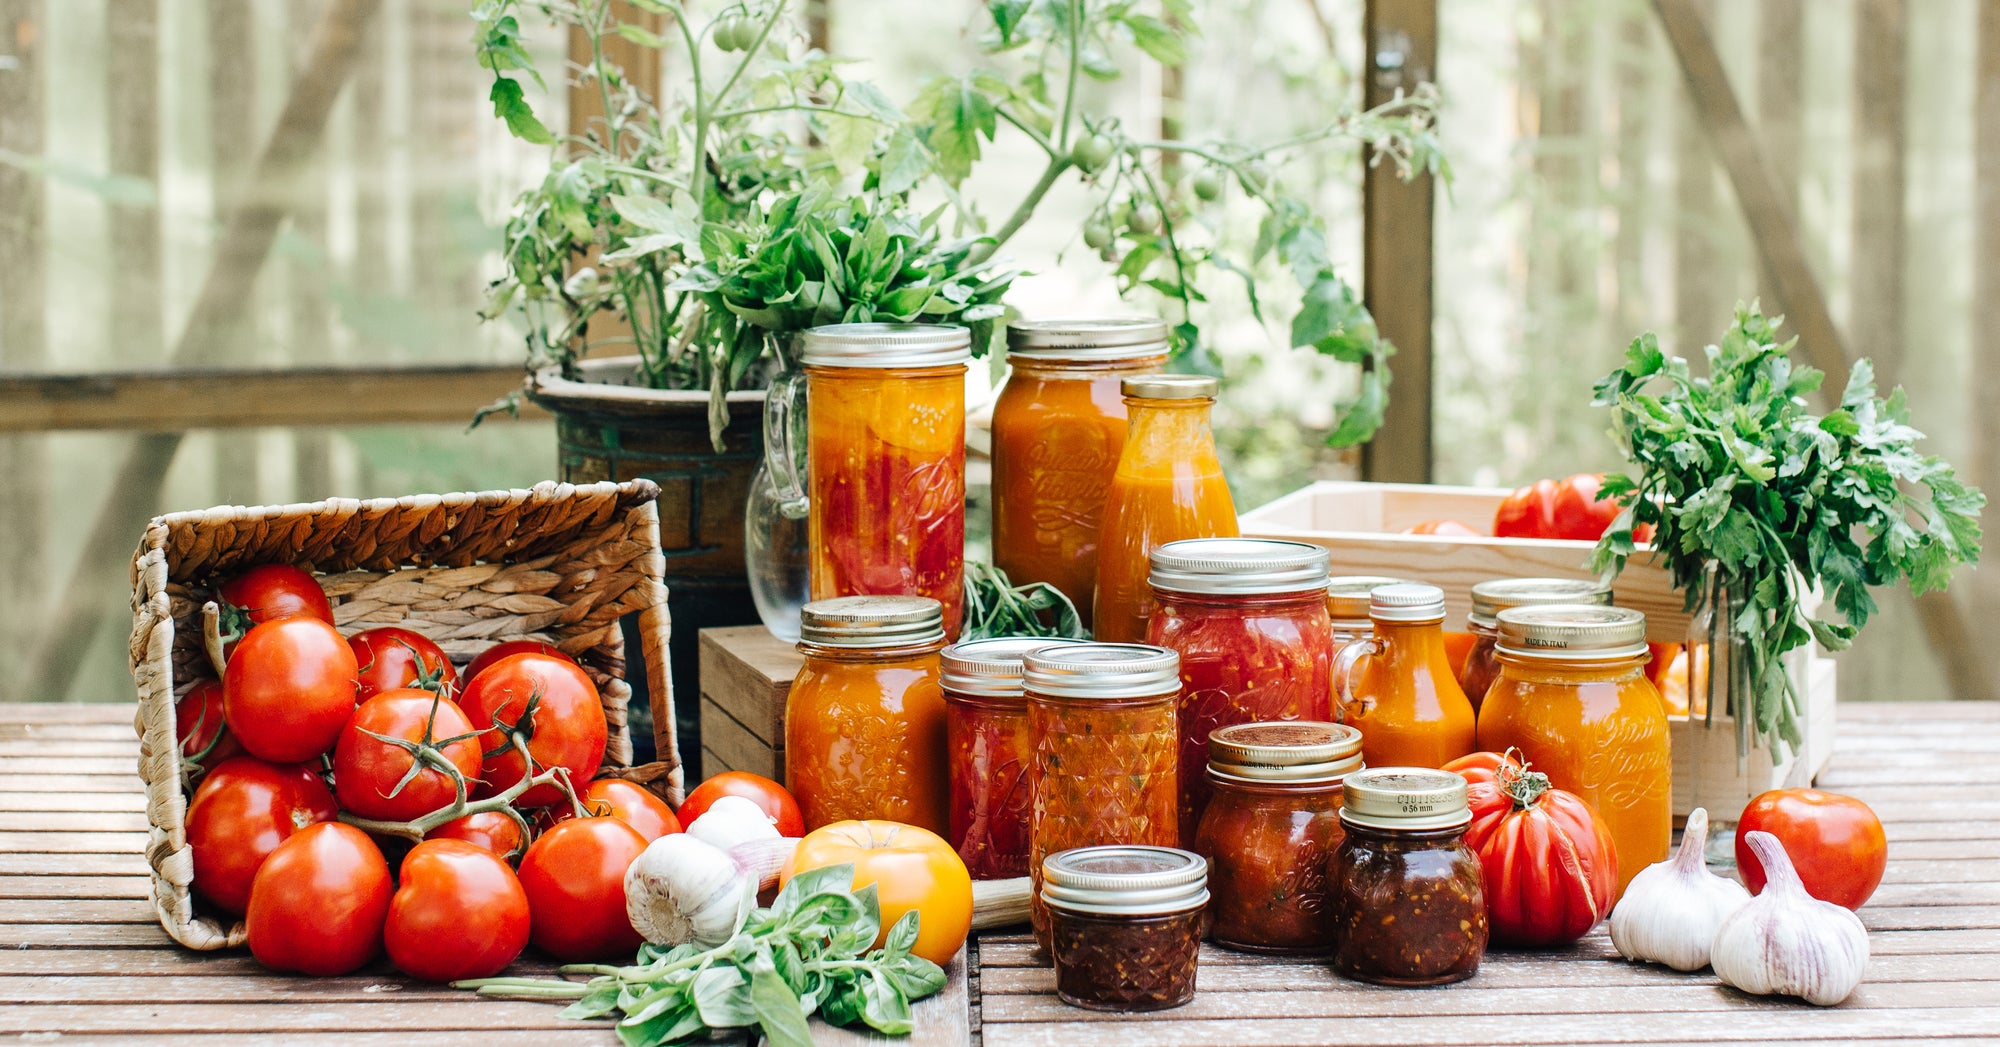 6 Ways to Preserve Garden Vegetables: How to Store your Garden Harvest